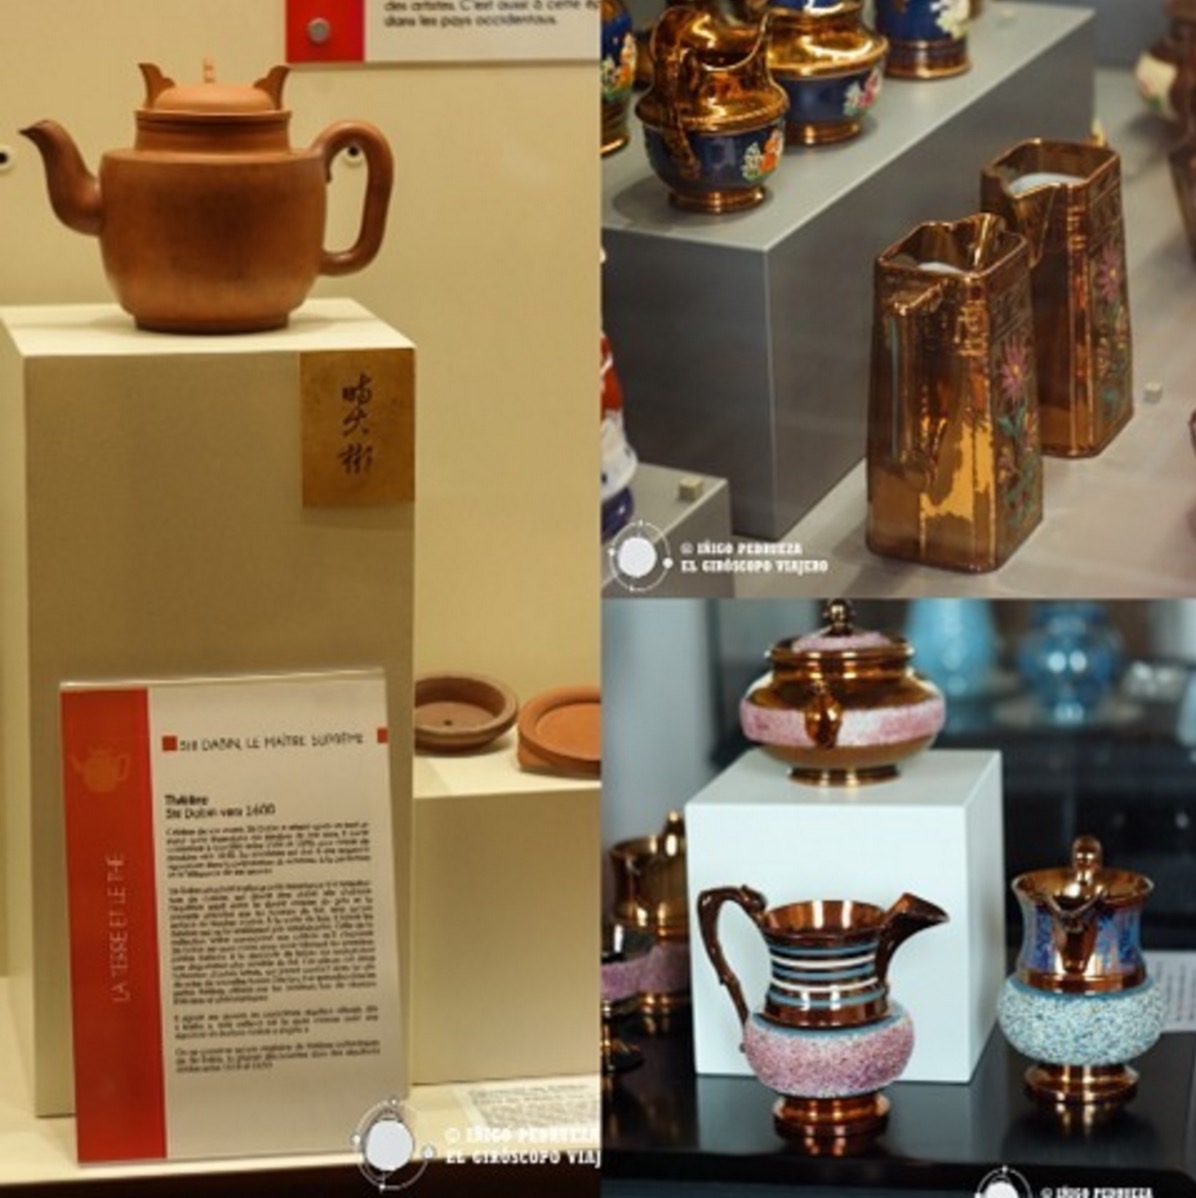 Exposiciones diversas como la delicada muestra sobre el arte del te, y fondos riquísimos hacen de este museo uno de los más interesantes de la provincia. ©Iñigo Pedrueza.